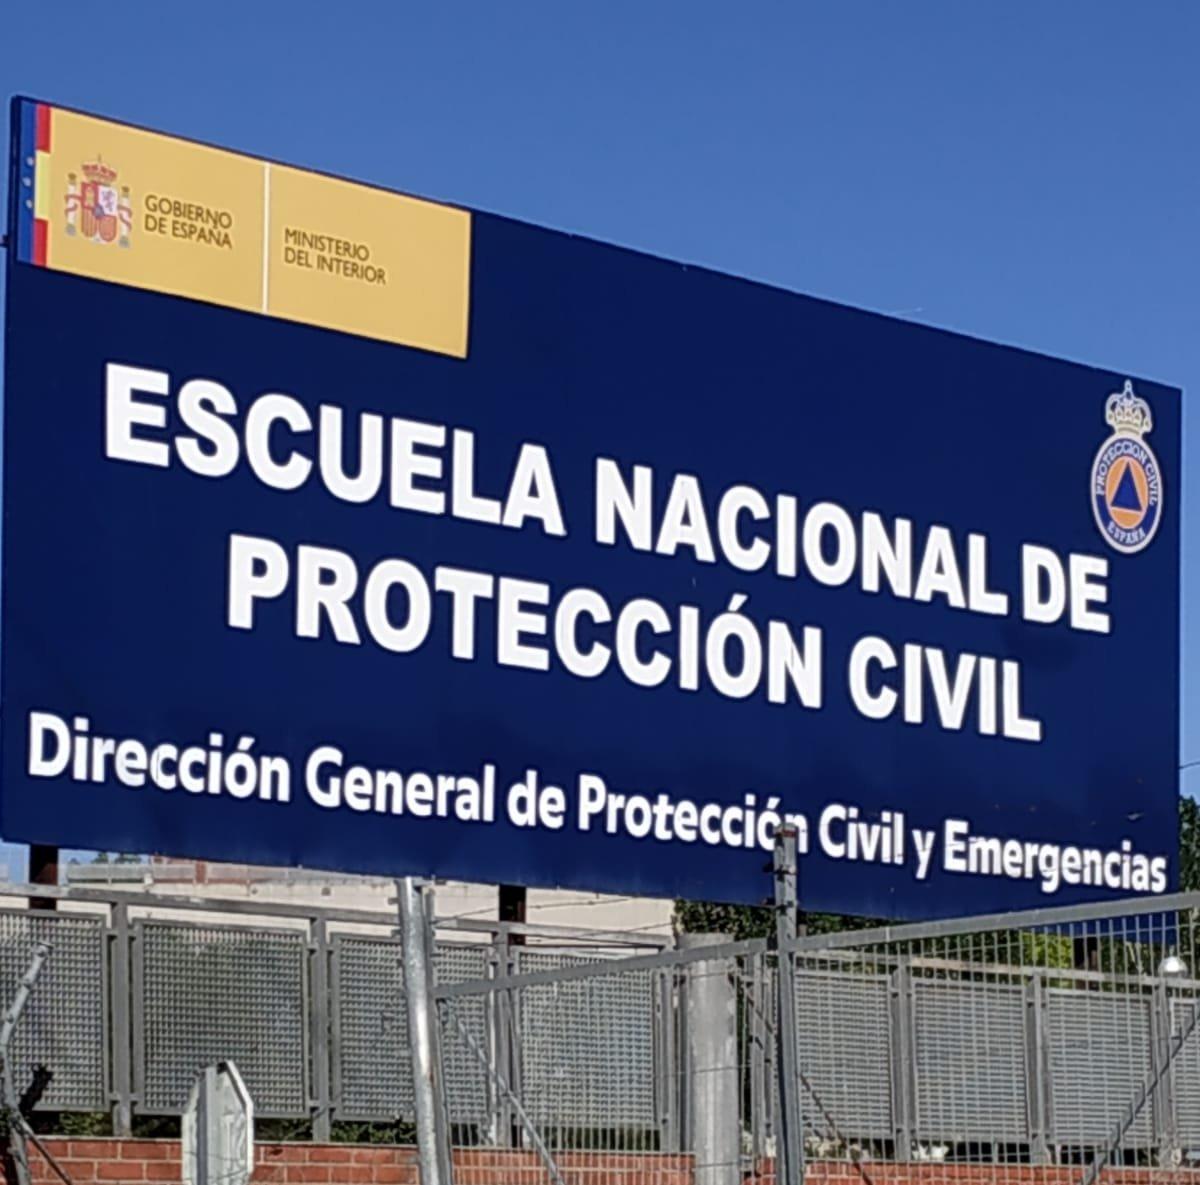 Escuela Nacional de Protección Civil